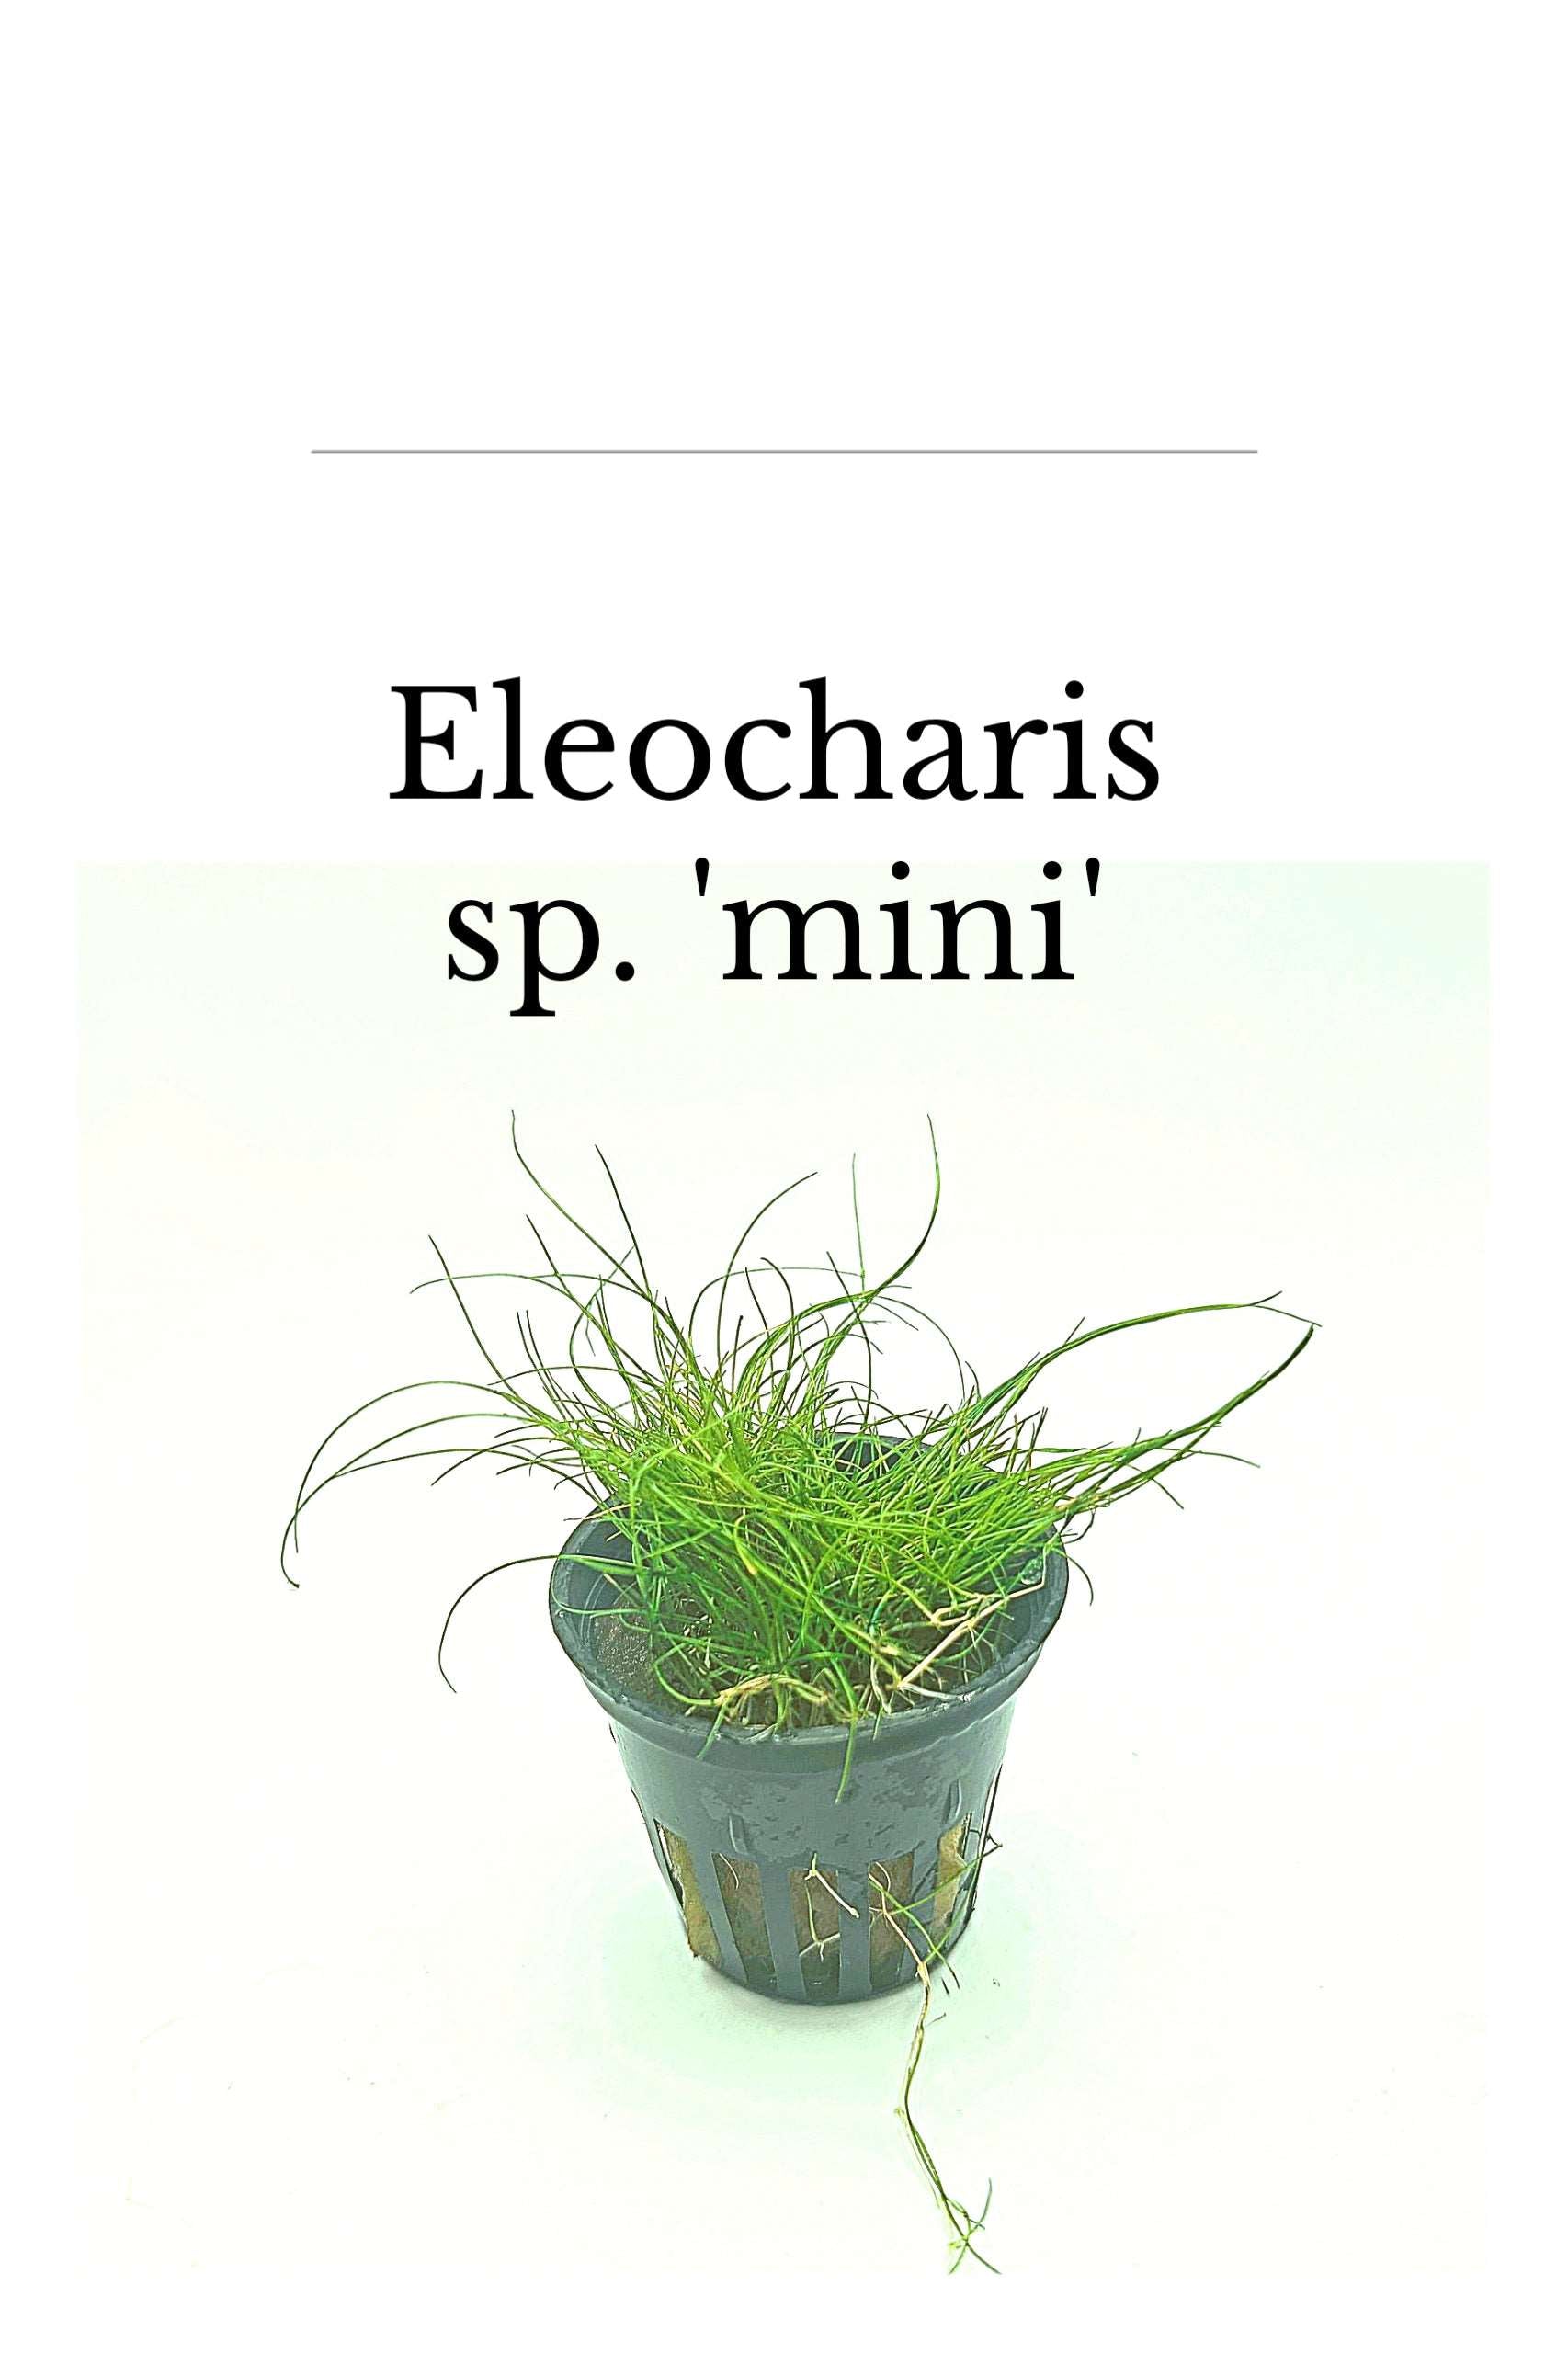 Eleocharis acicularis "mini"